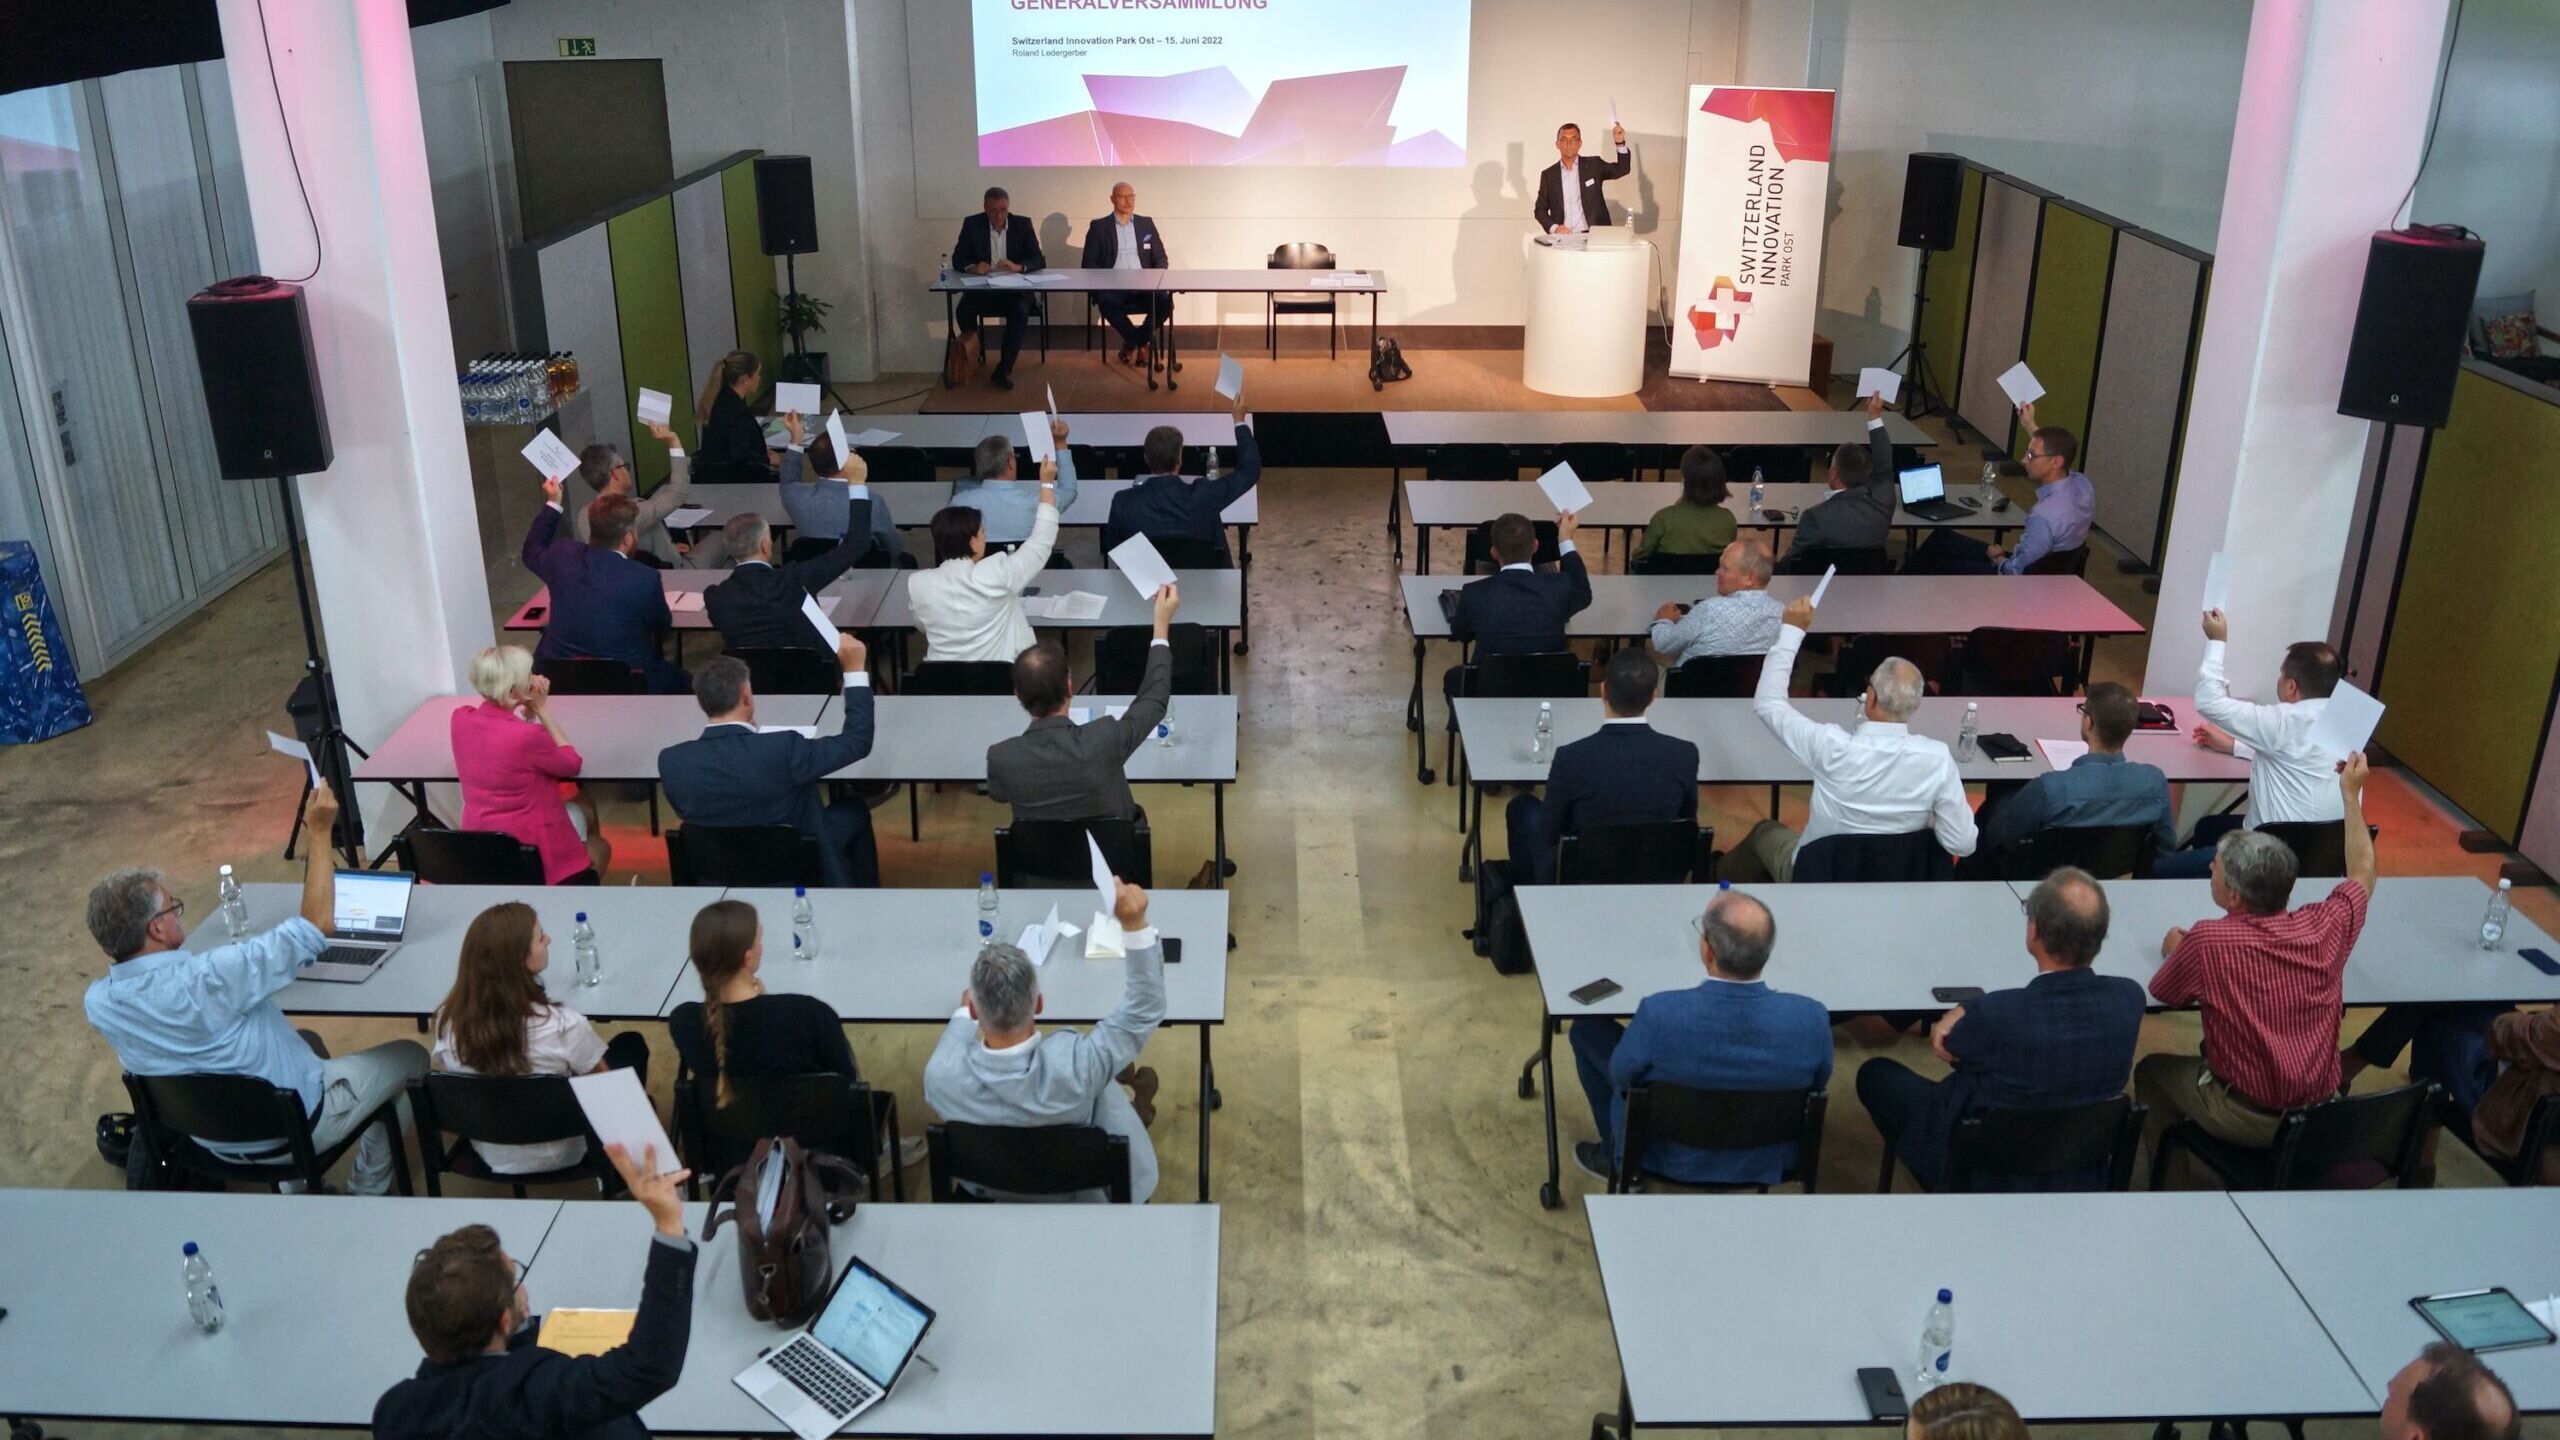 Il 15 giugno 2022 è avvenuta la fusione nello Switzerland Innovation Park Est della società Startfeld, acceleratore di startup creato nel 2010 e ospitato dal 2016 dal Campus Lerchenfeld di San Gallo